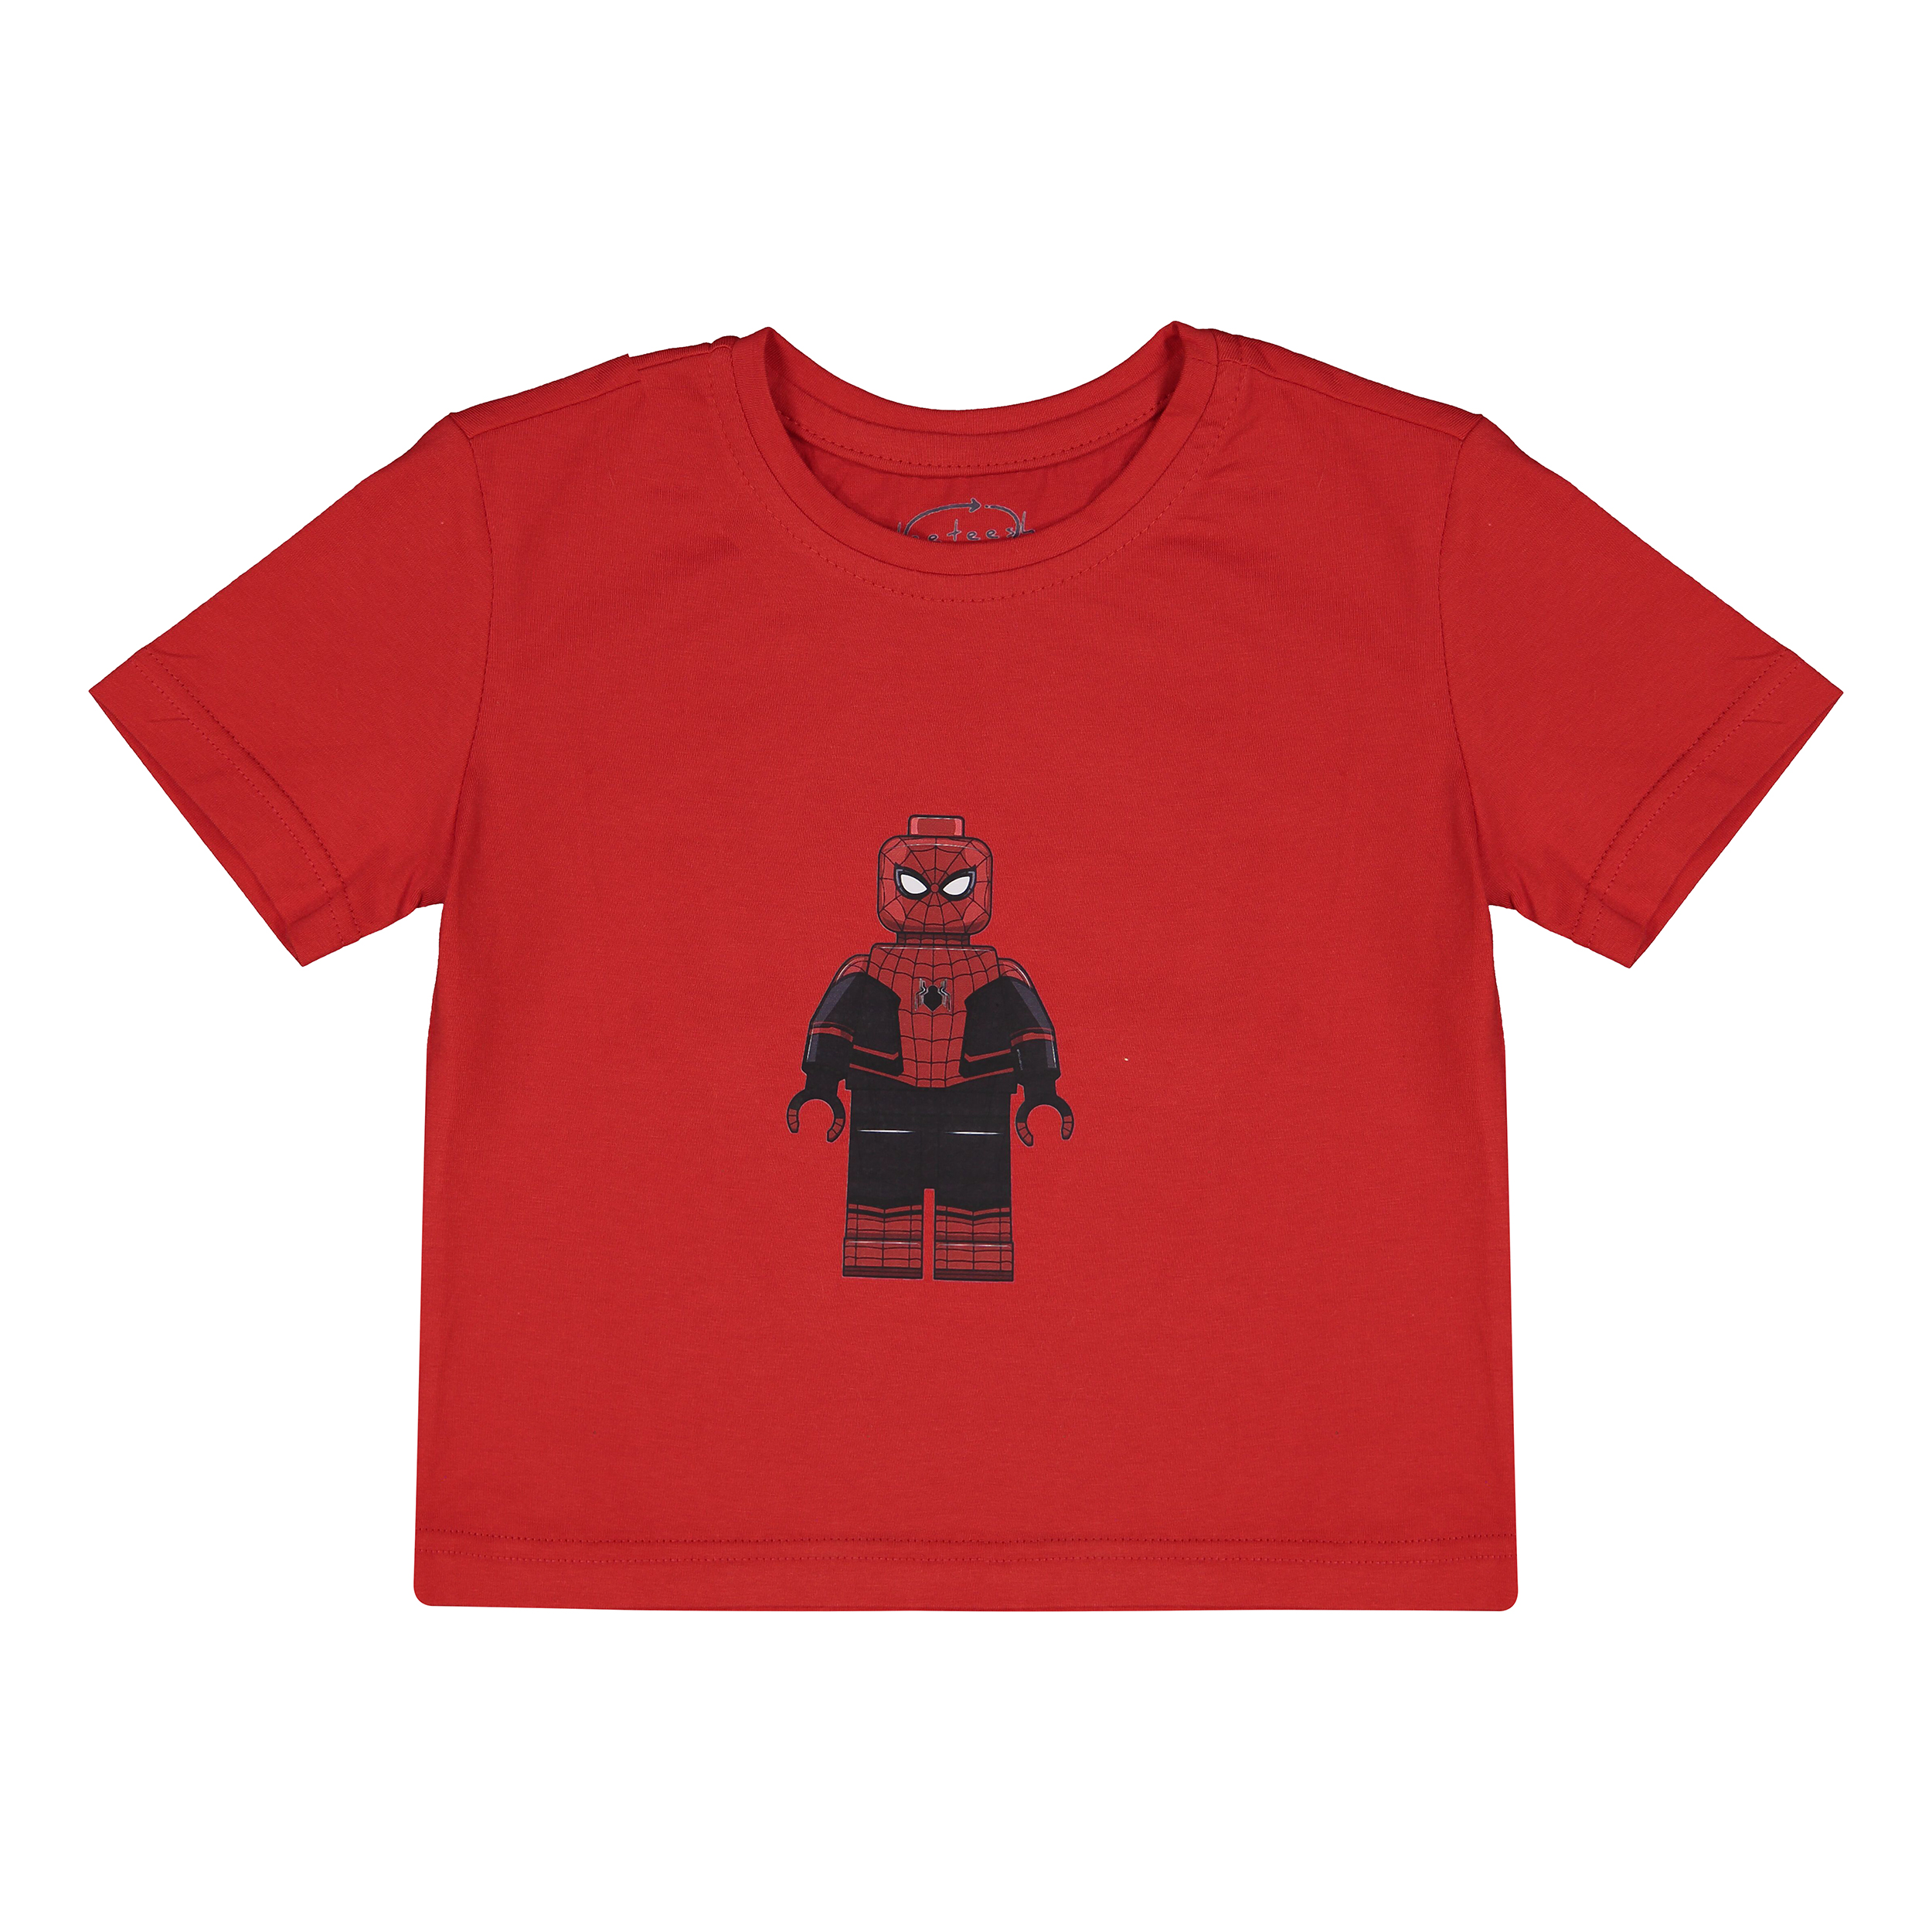 تی شرت آستین کوتاه پسرانه تیتیش مدل مرد عنکبوتی رنگ قرمز